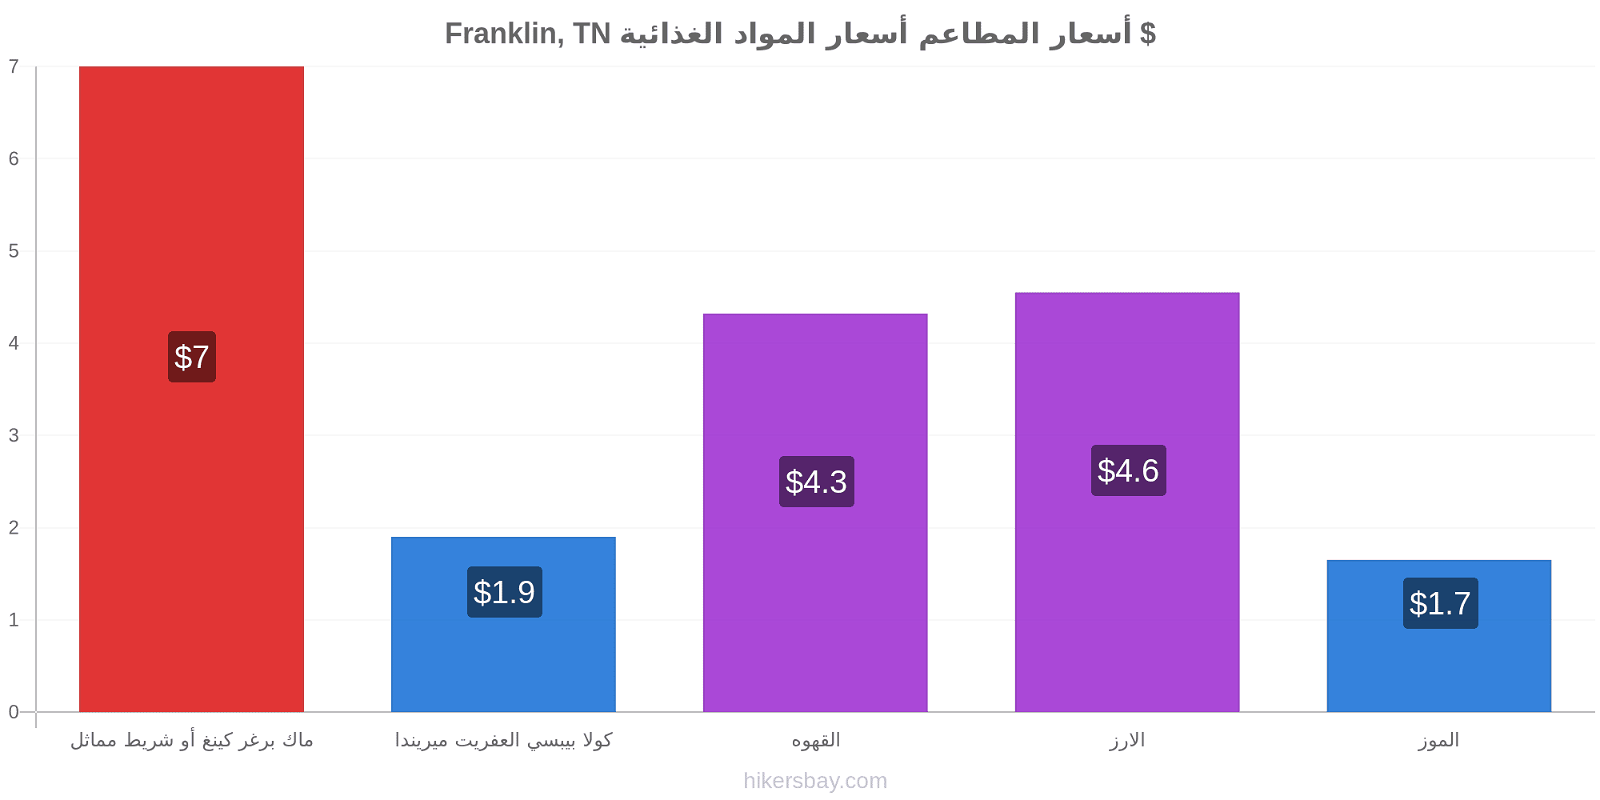 Franklin, TN تغييرات الأسعار hikersbay.com